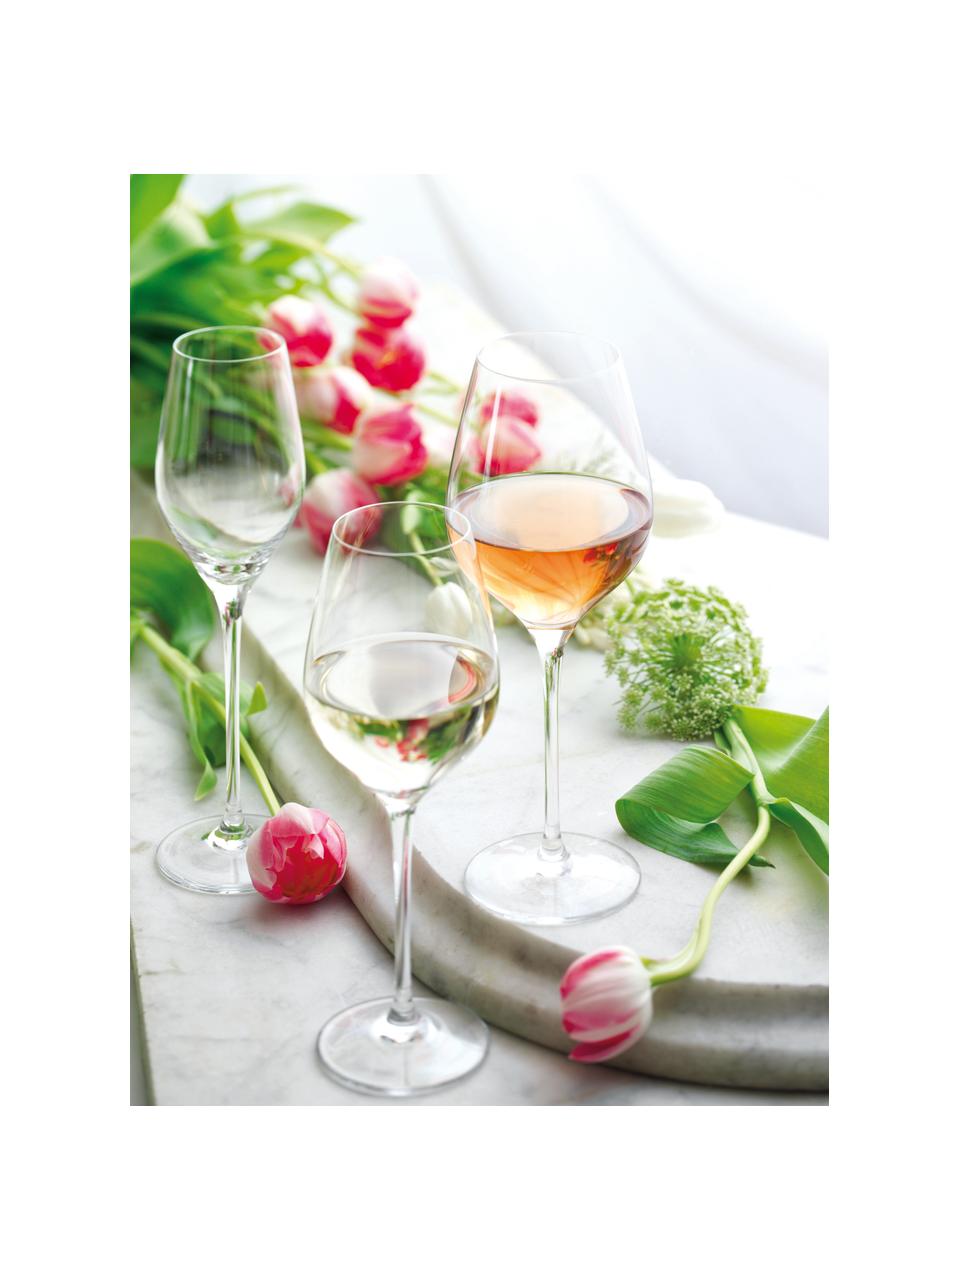 Křišťálové sklenice na červené víno Exquisit, 6 ks, Křišťálové sklo, Transparentní, Ø 7 x V 24 cm, 480 ml